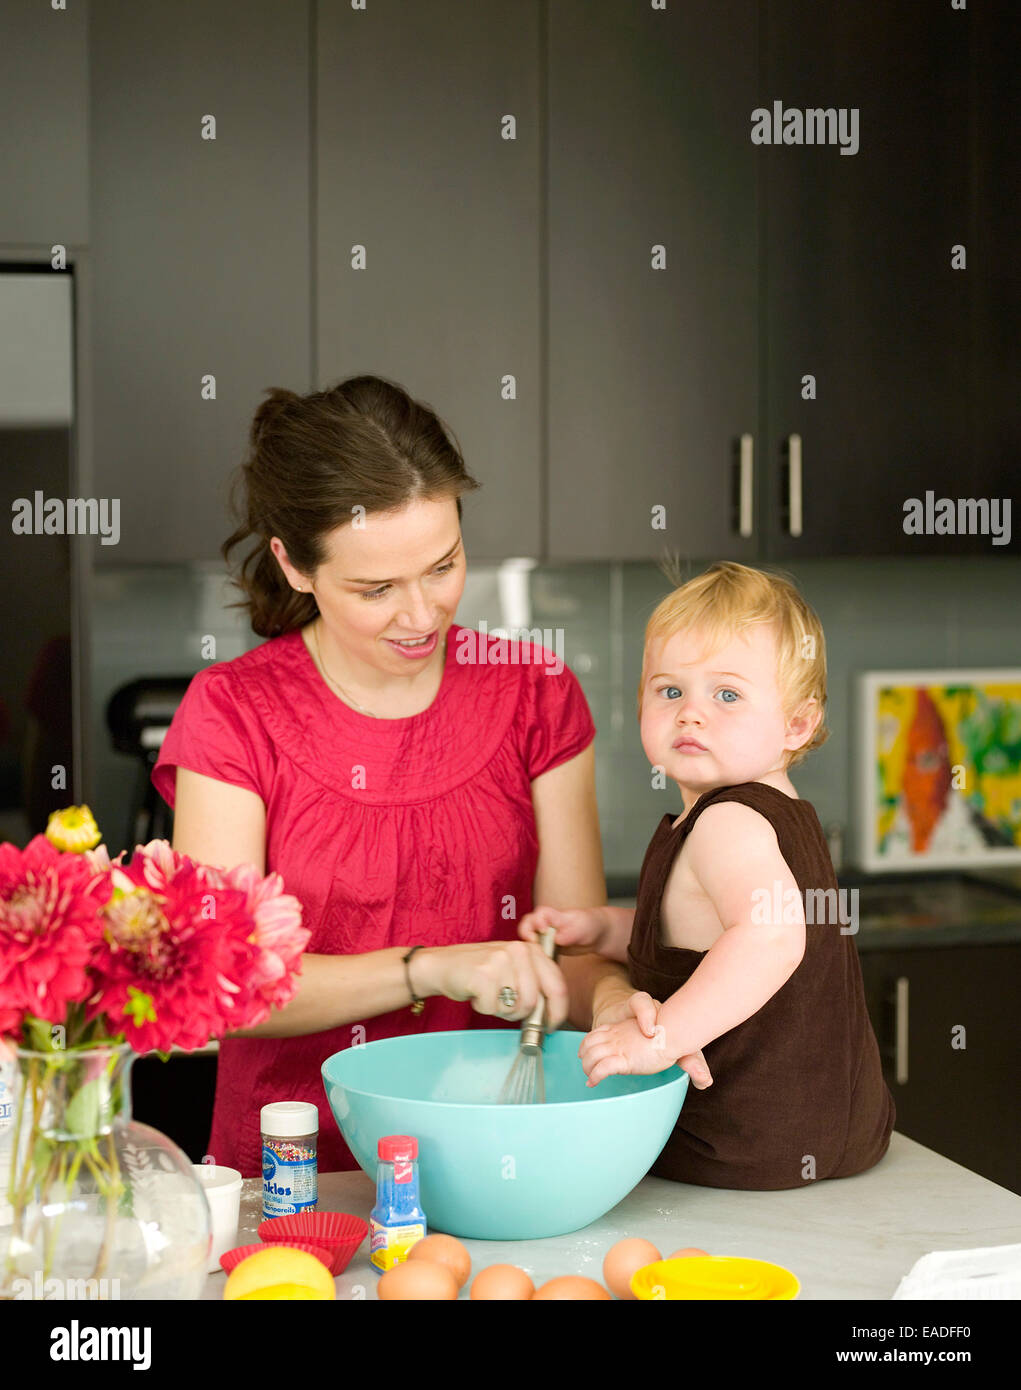 Femme et enfant cooking in kitchen Banque D'Images